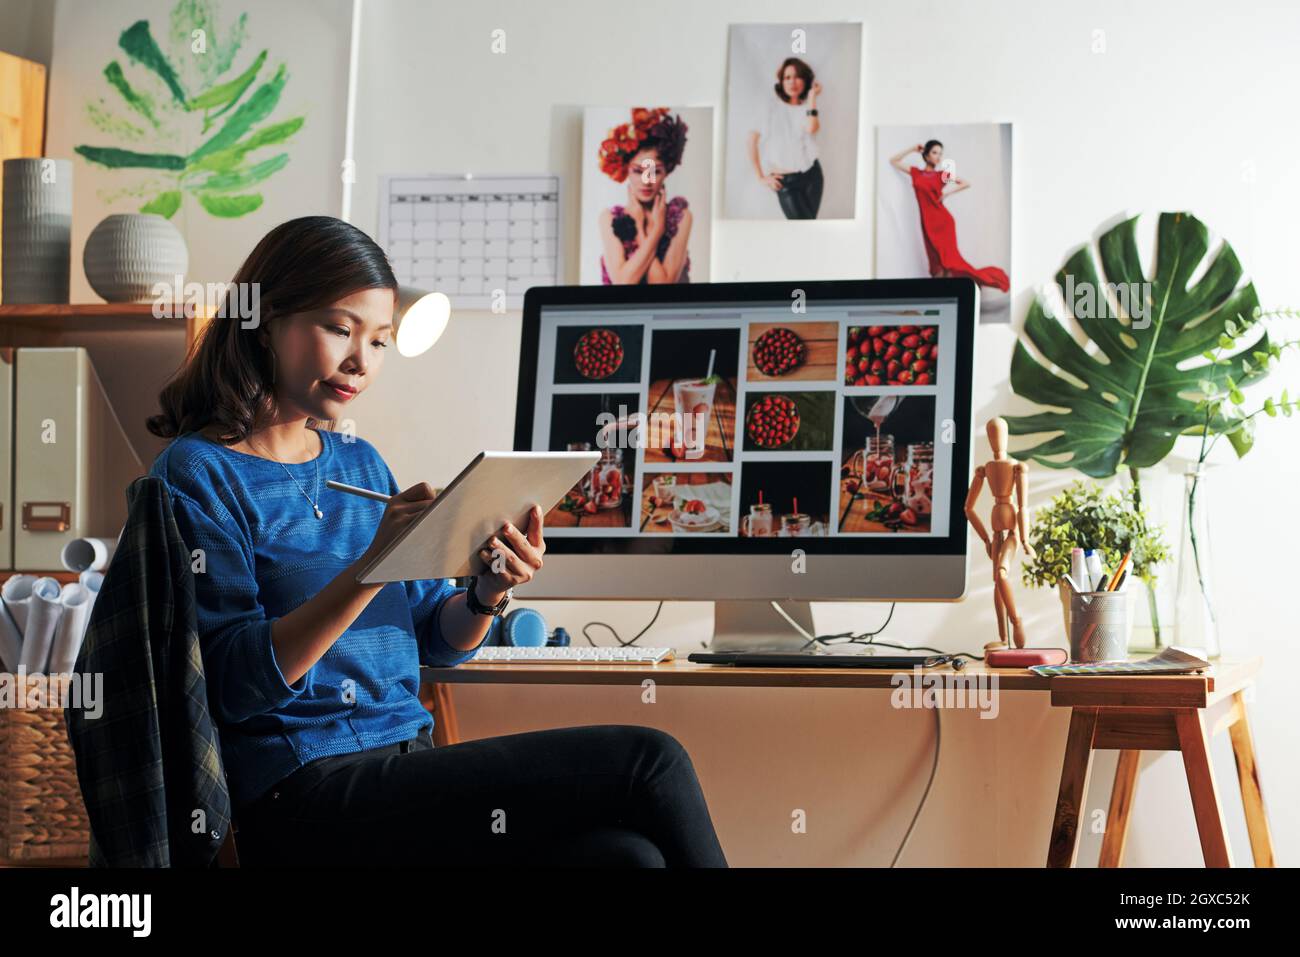 Attraktive junge asiatische Frau sitzt am Computer mit Erdbeerbildern auf dem Bildschirm und Zeichnung Skizze auf Tablet Stockfoto